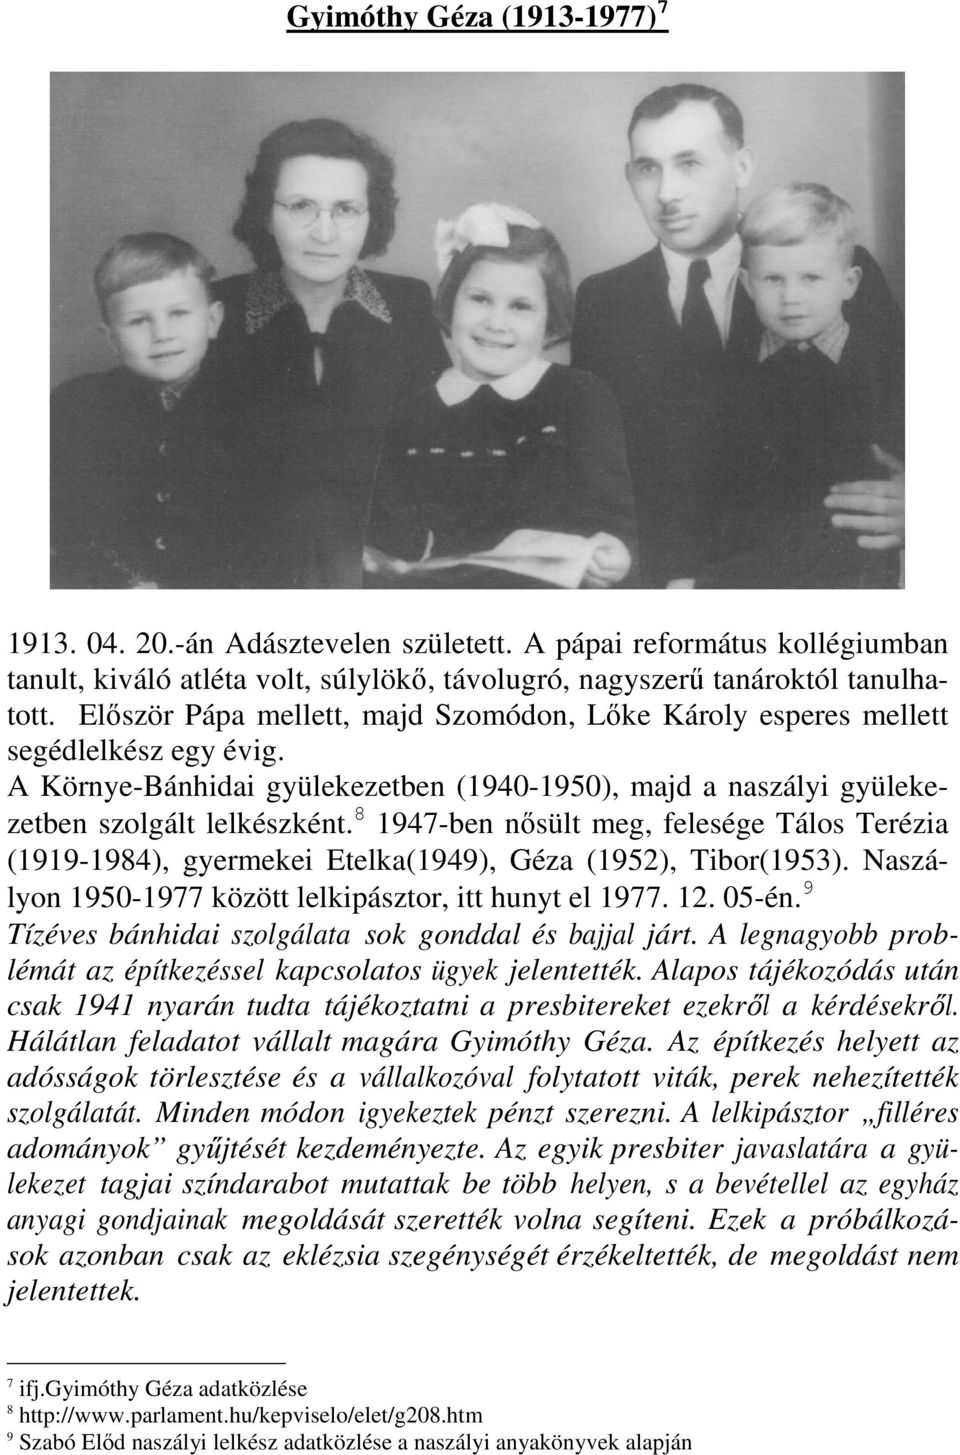 8 1947-ben nısült meg, felesége Tálos Terézia (1919-1984), gyermekei Etelka(1949), Géza (1952), Tibor(1953). Naszályon 1950-1977 között lelkipásztor, itt hunyt el 1977. 12. 05-én.